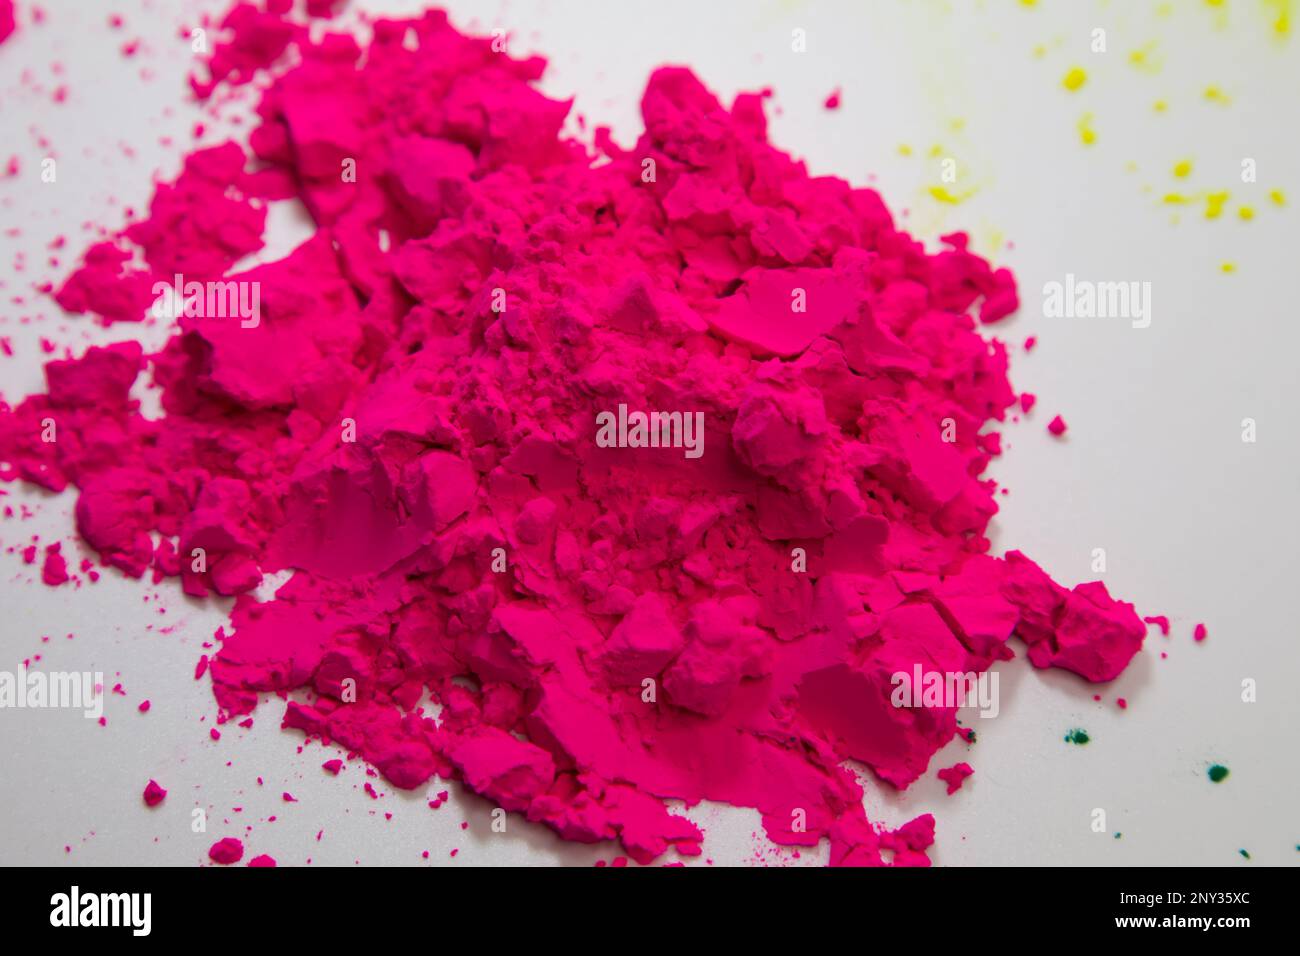 Closeup details of Holi powder on white background. Happy holi. Indian holi festival. Stock Photo